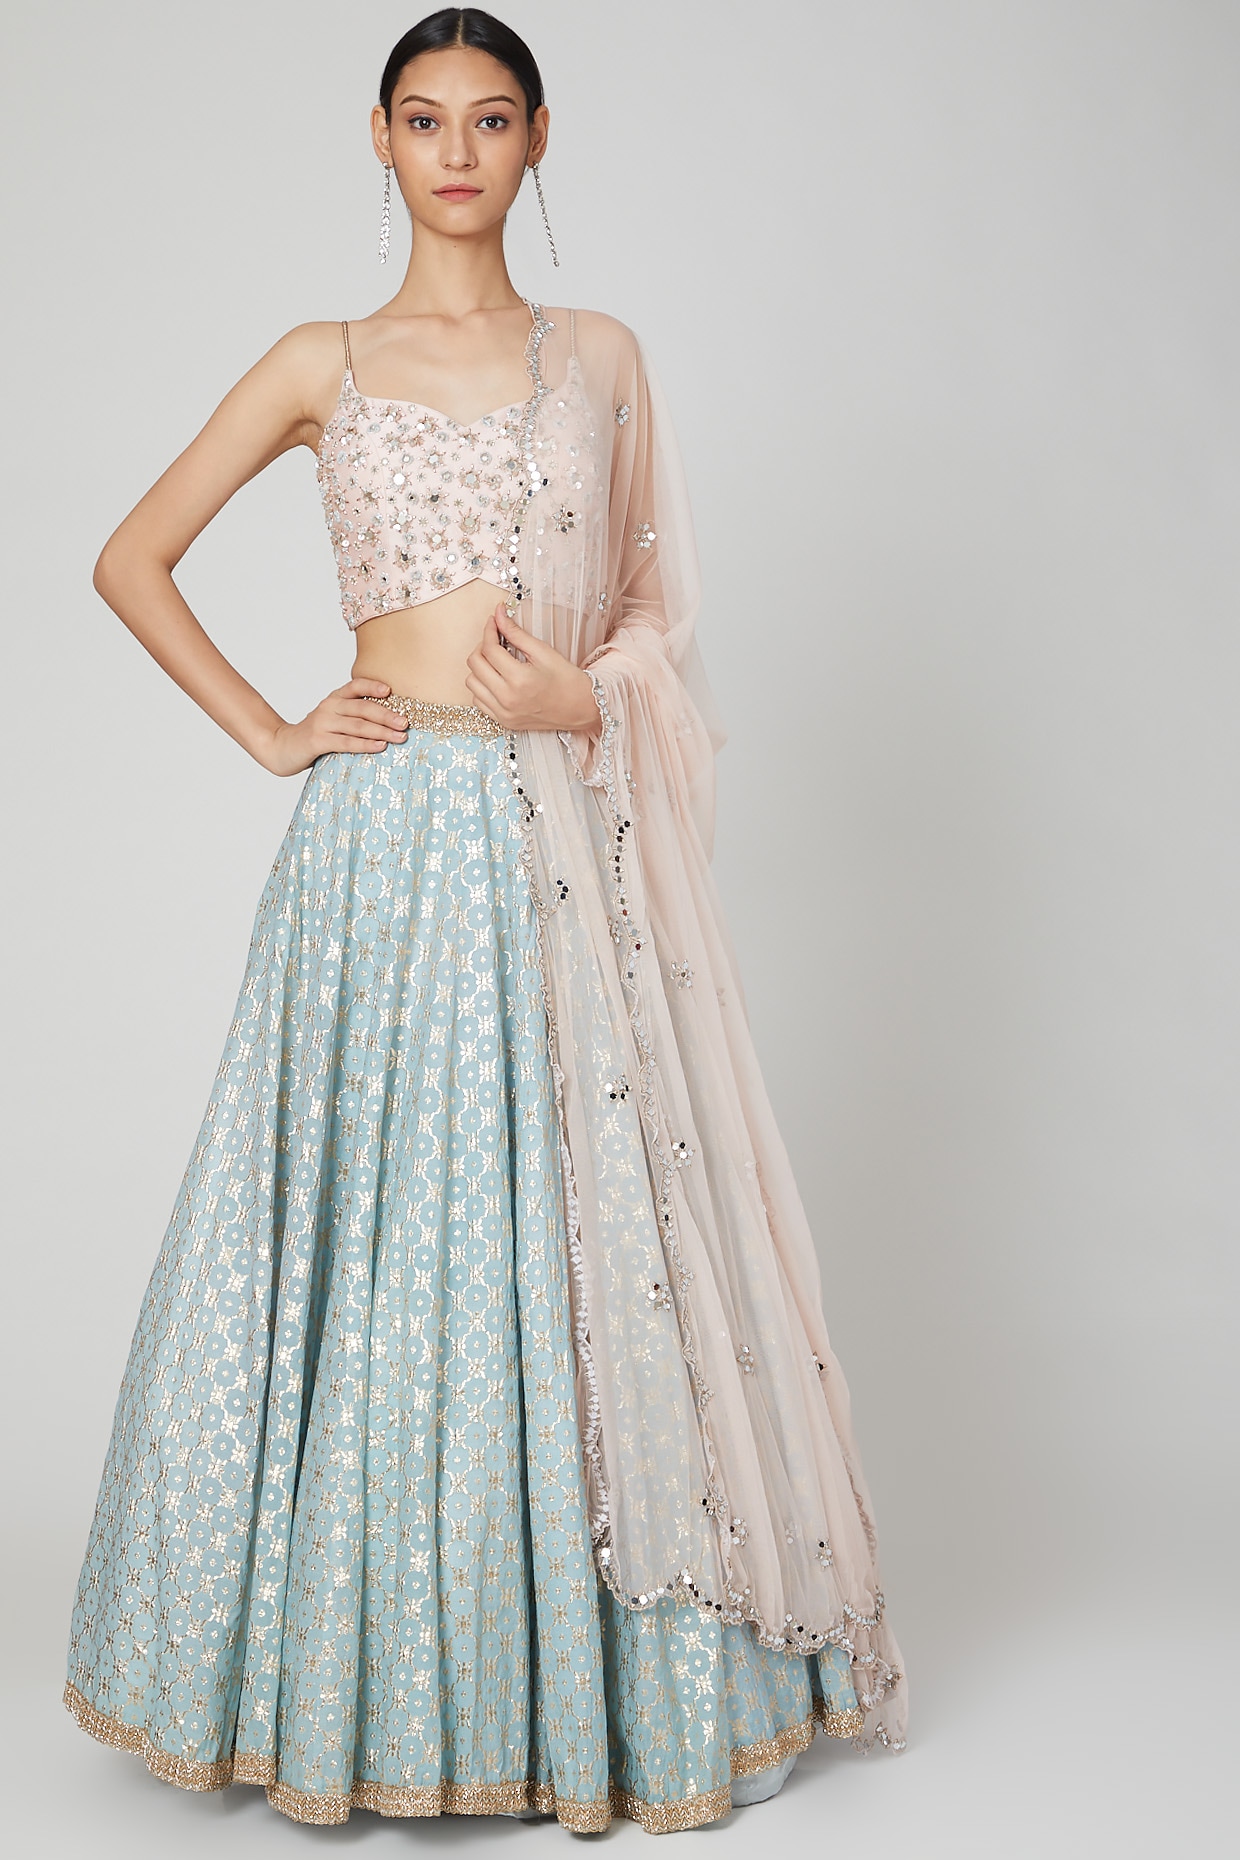 Buy Designer Lehenga - Pink And Blue Multi Embroidery Wedding Lehenga Choli